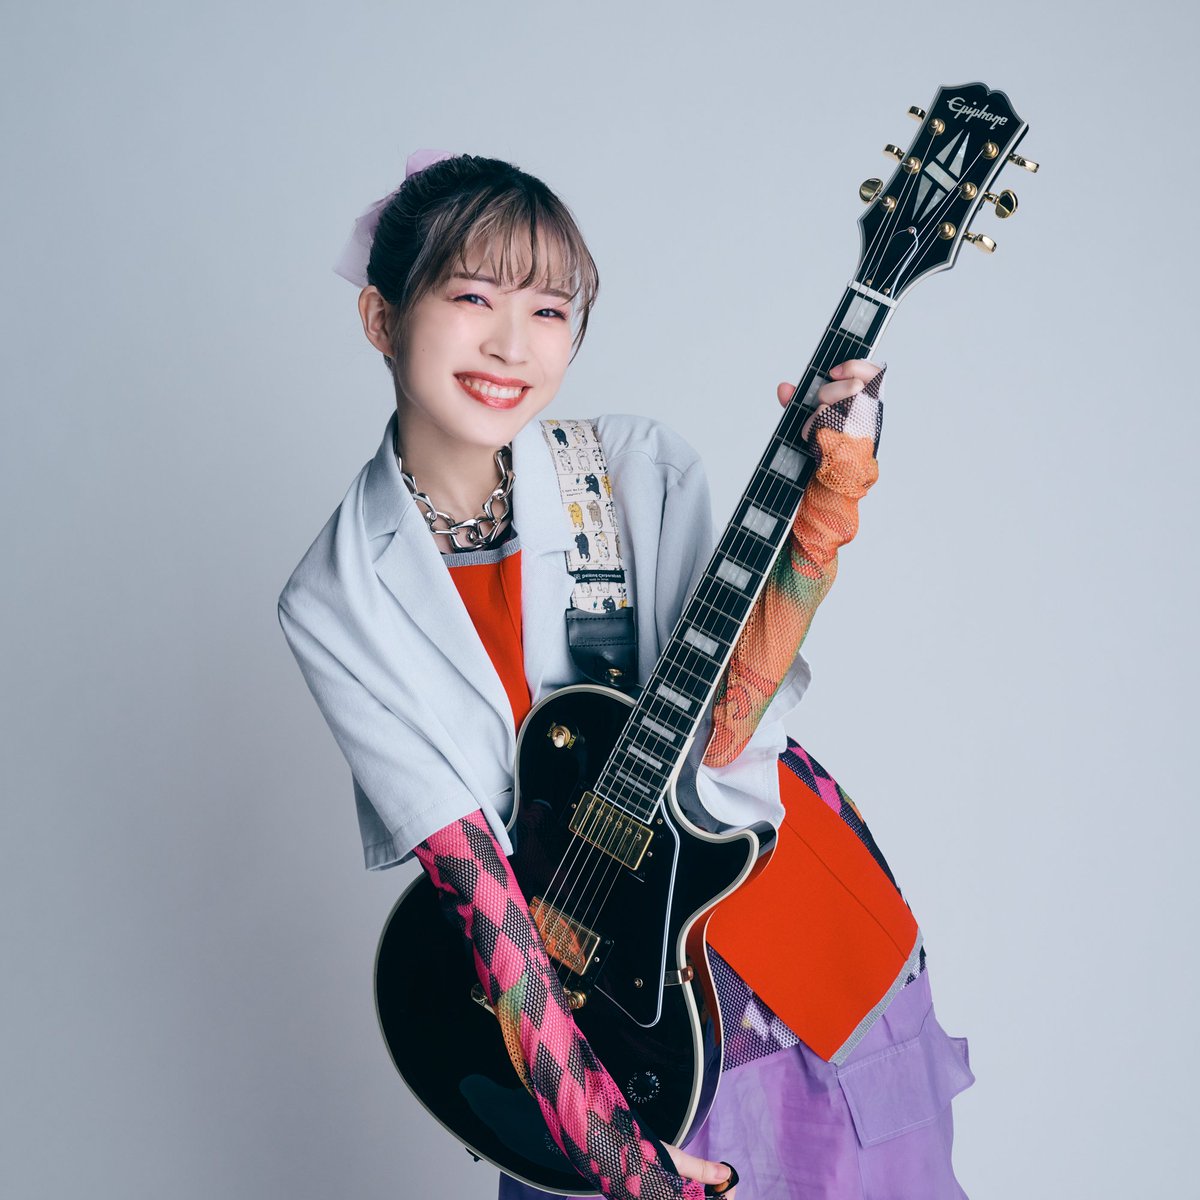 HAPPY BIRTHDAY, YOSHINO🎂🎉

5/15は #青山吉能 さんのお誕生日😆
最高のギターヒーロー・青山さんをずっと応援します🎸